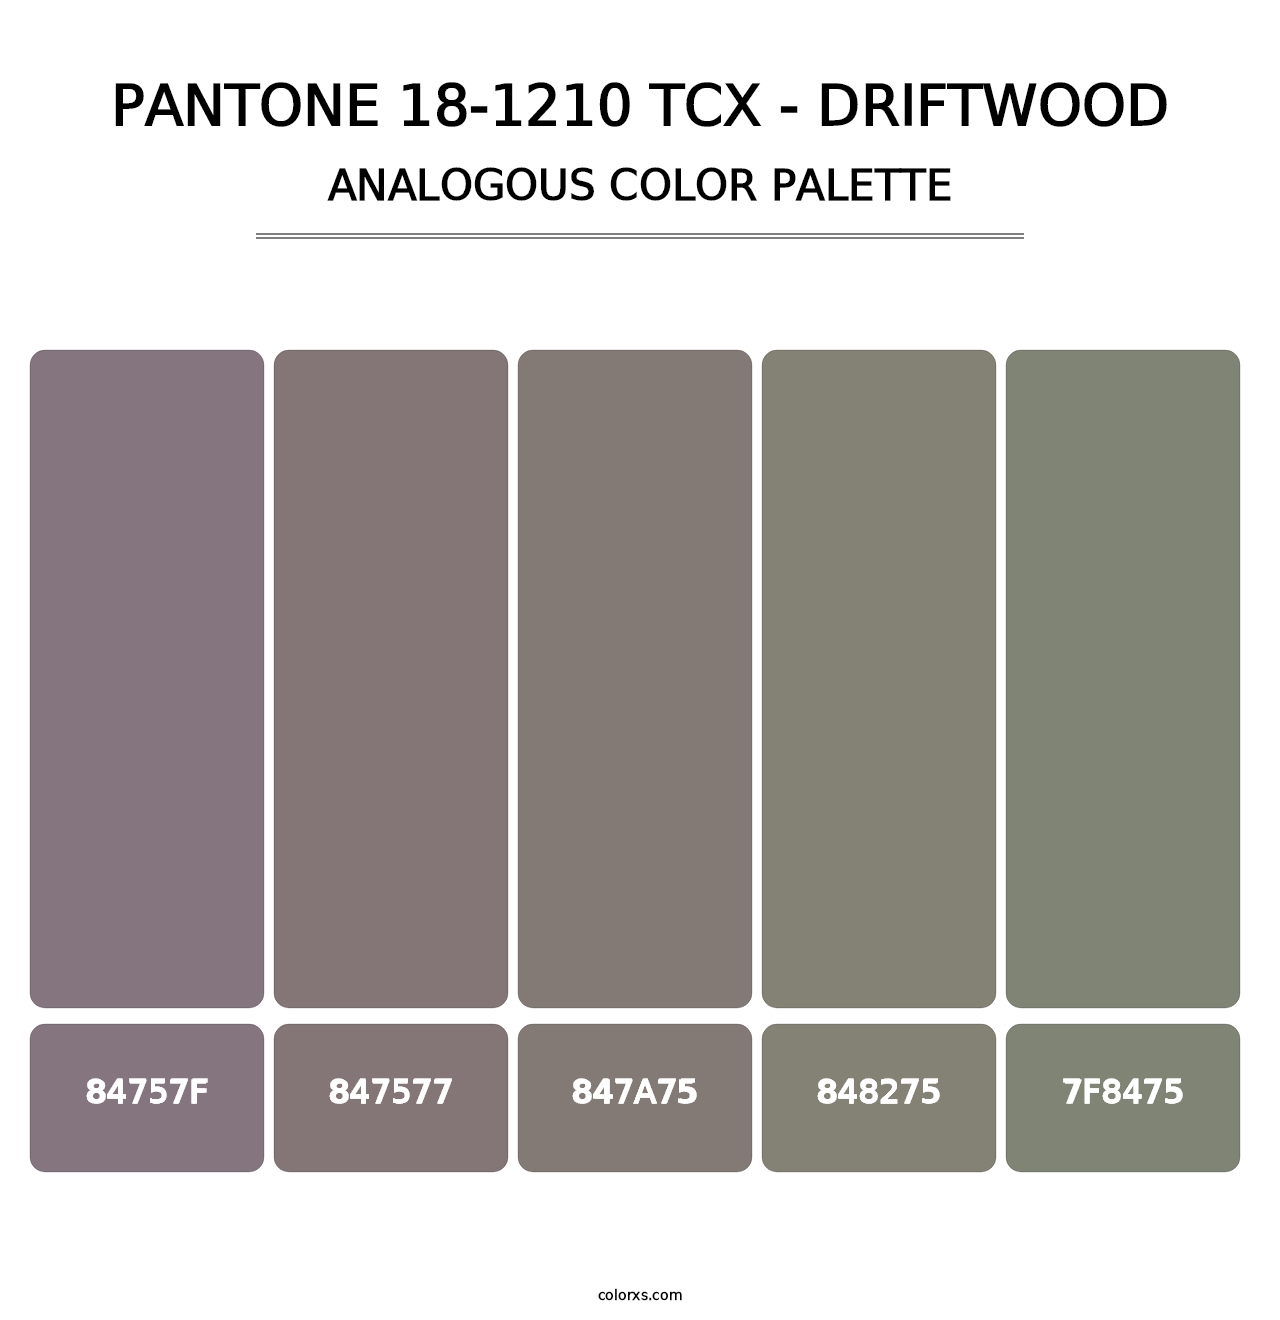 PANTONE 18-1210 TCX - Driftwood - Analogous Color Palette